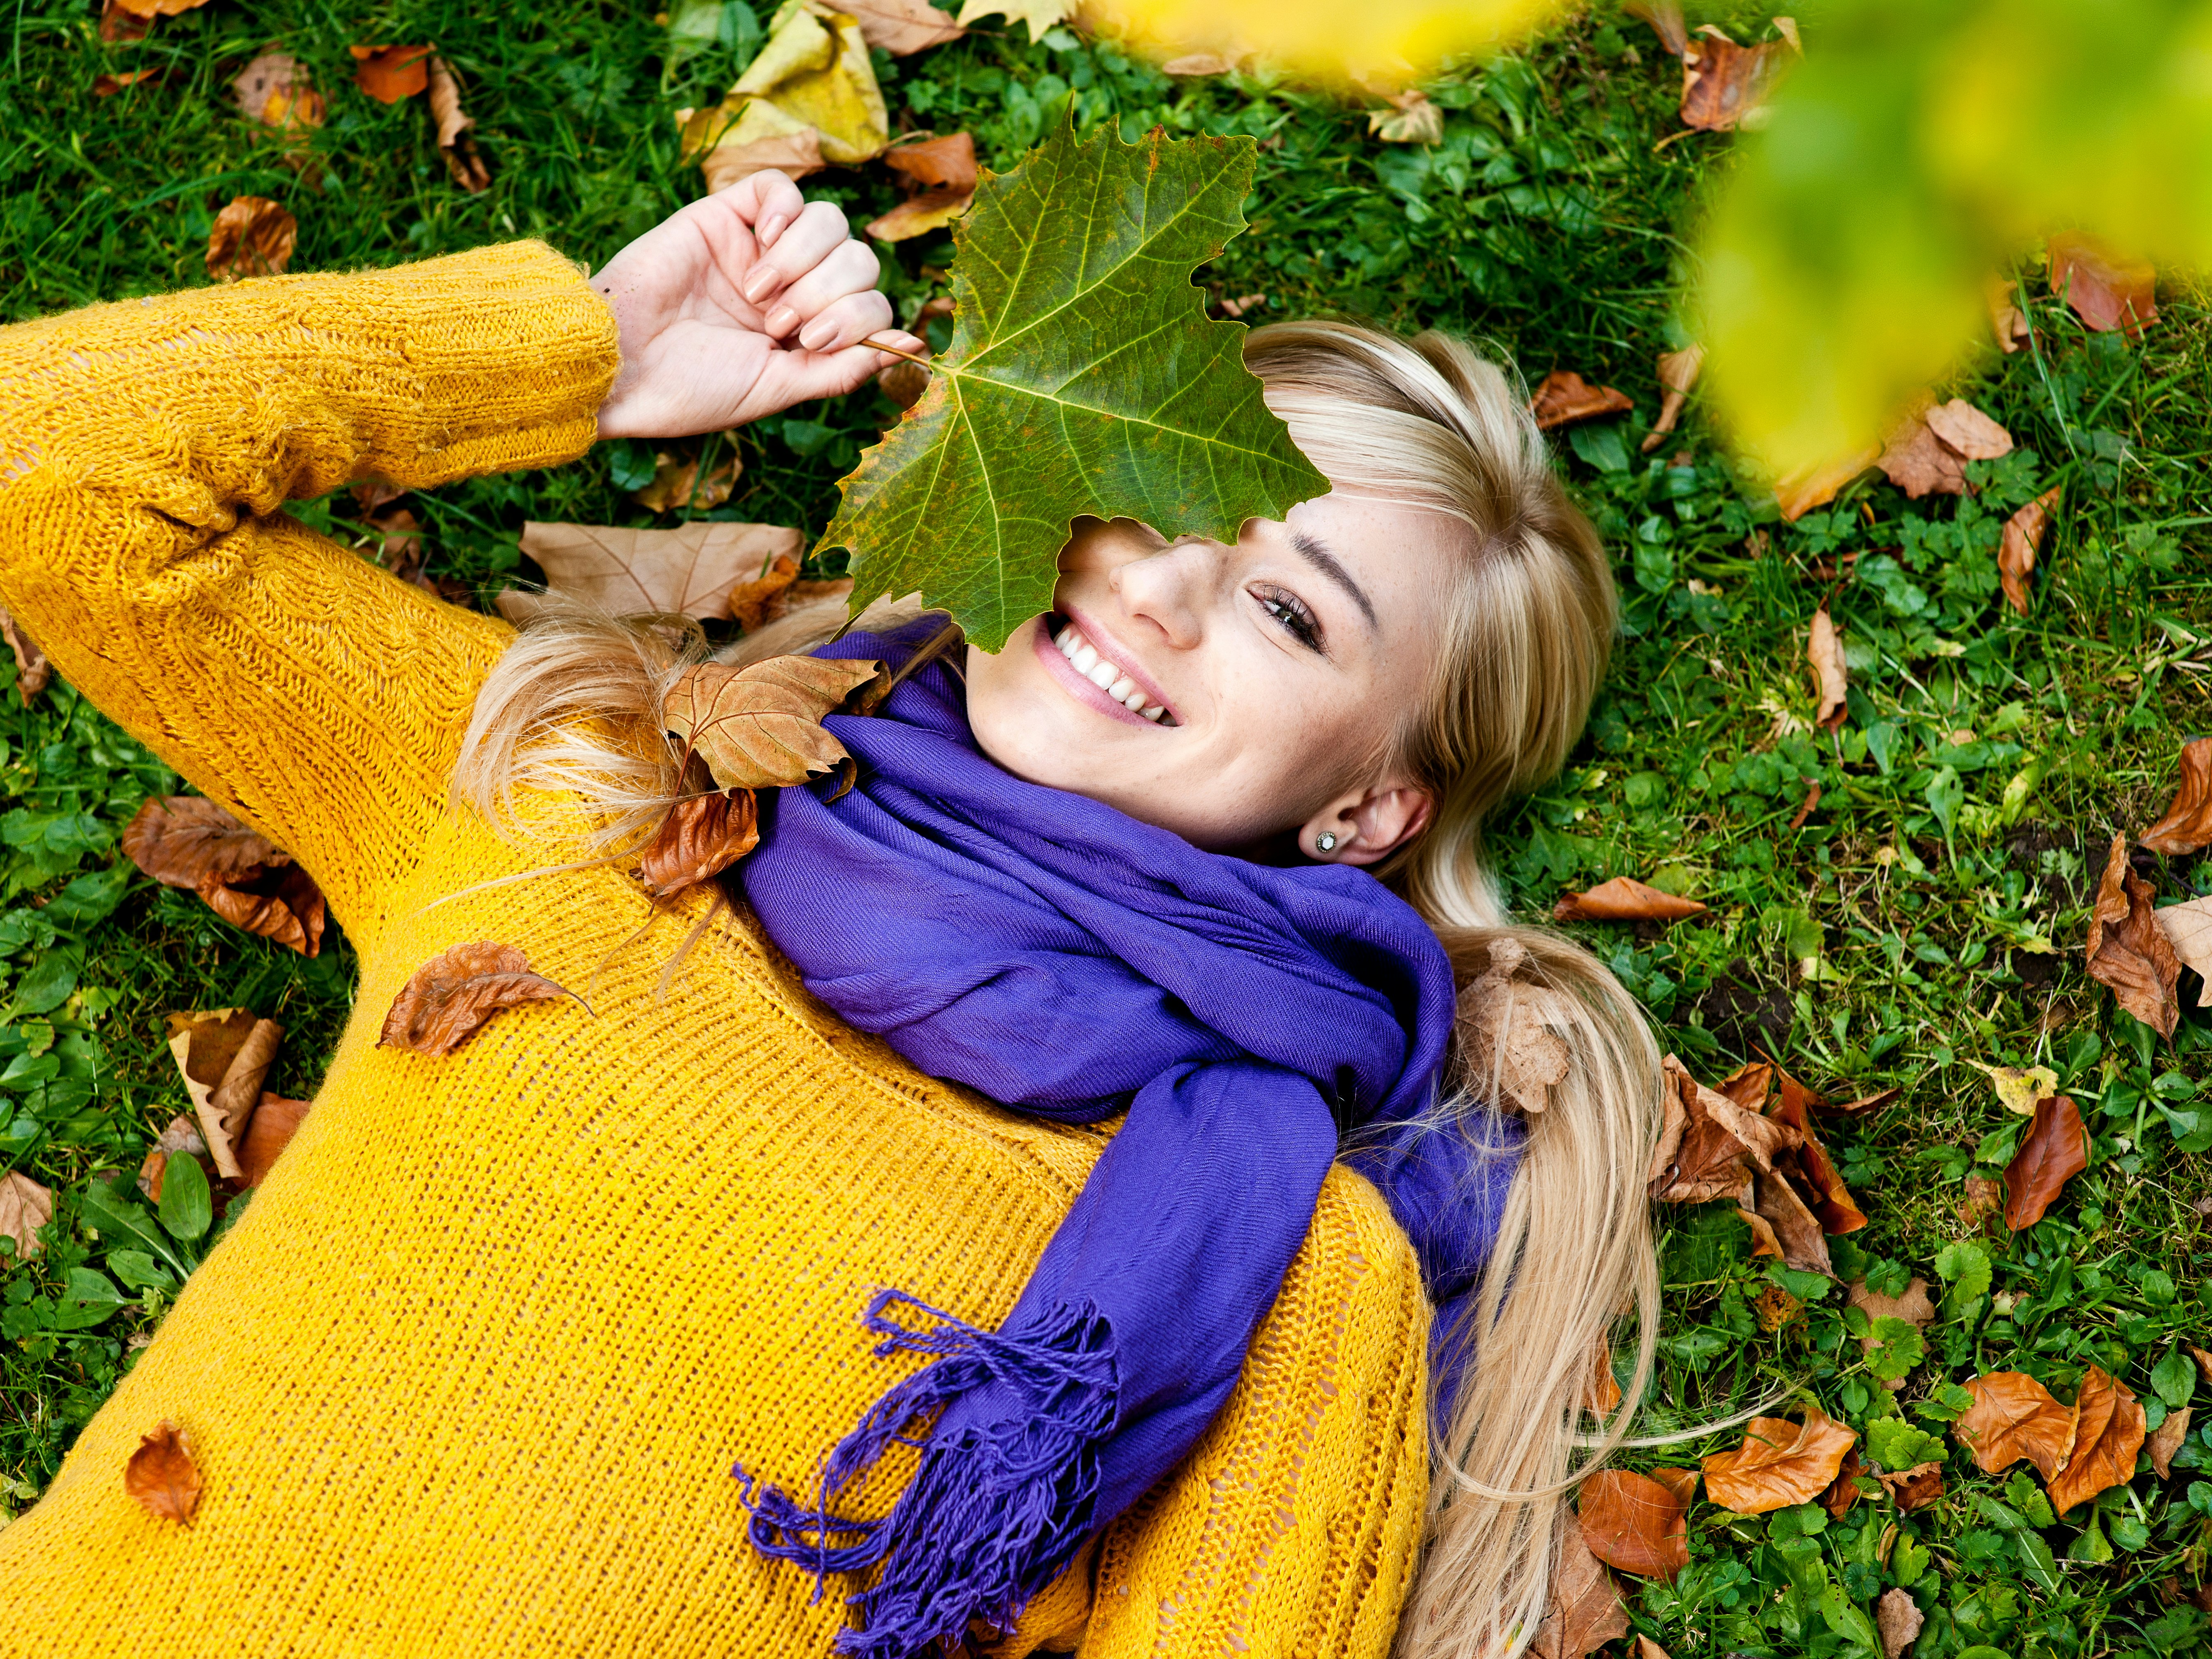 Kvinne med blondt langt hår, lilla skjerf og gul genser ligger på gress med høstløv og holder et grønt blad over det ene øyet mens hun smiler.